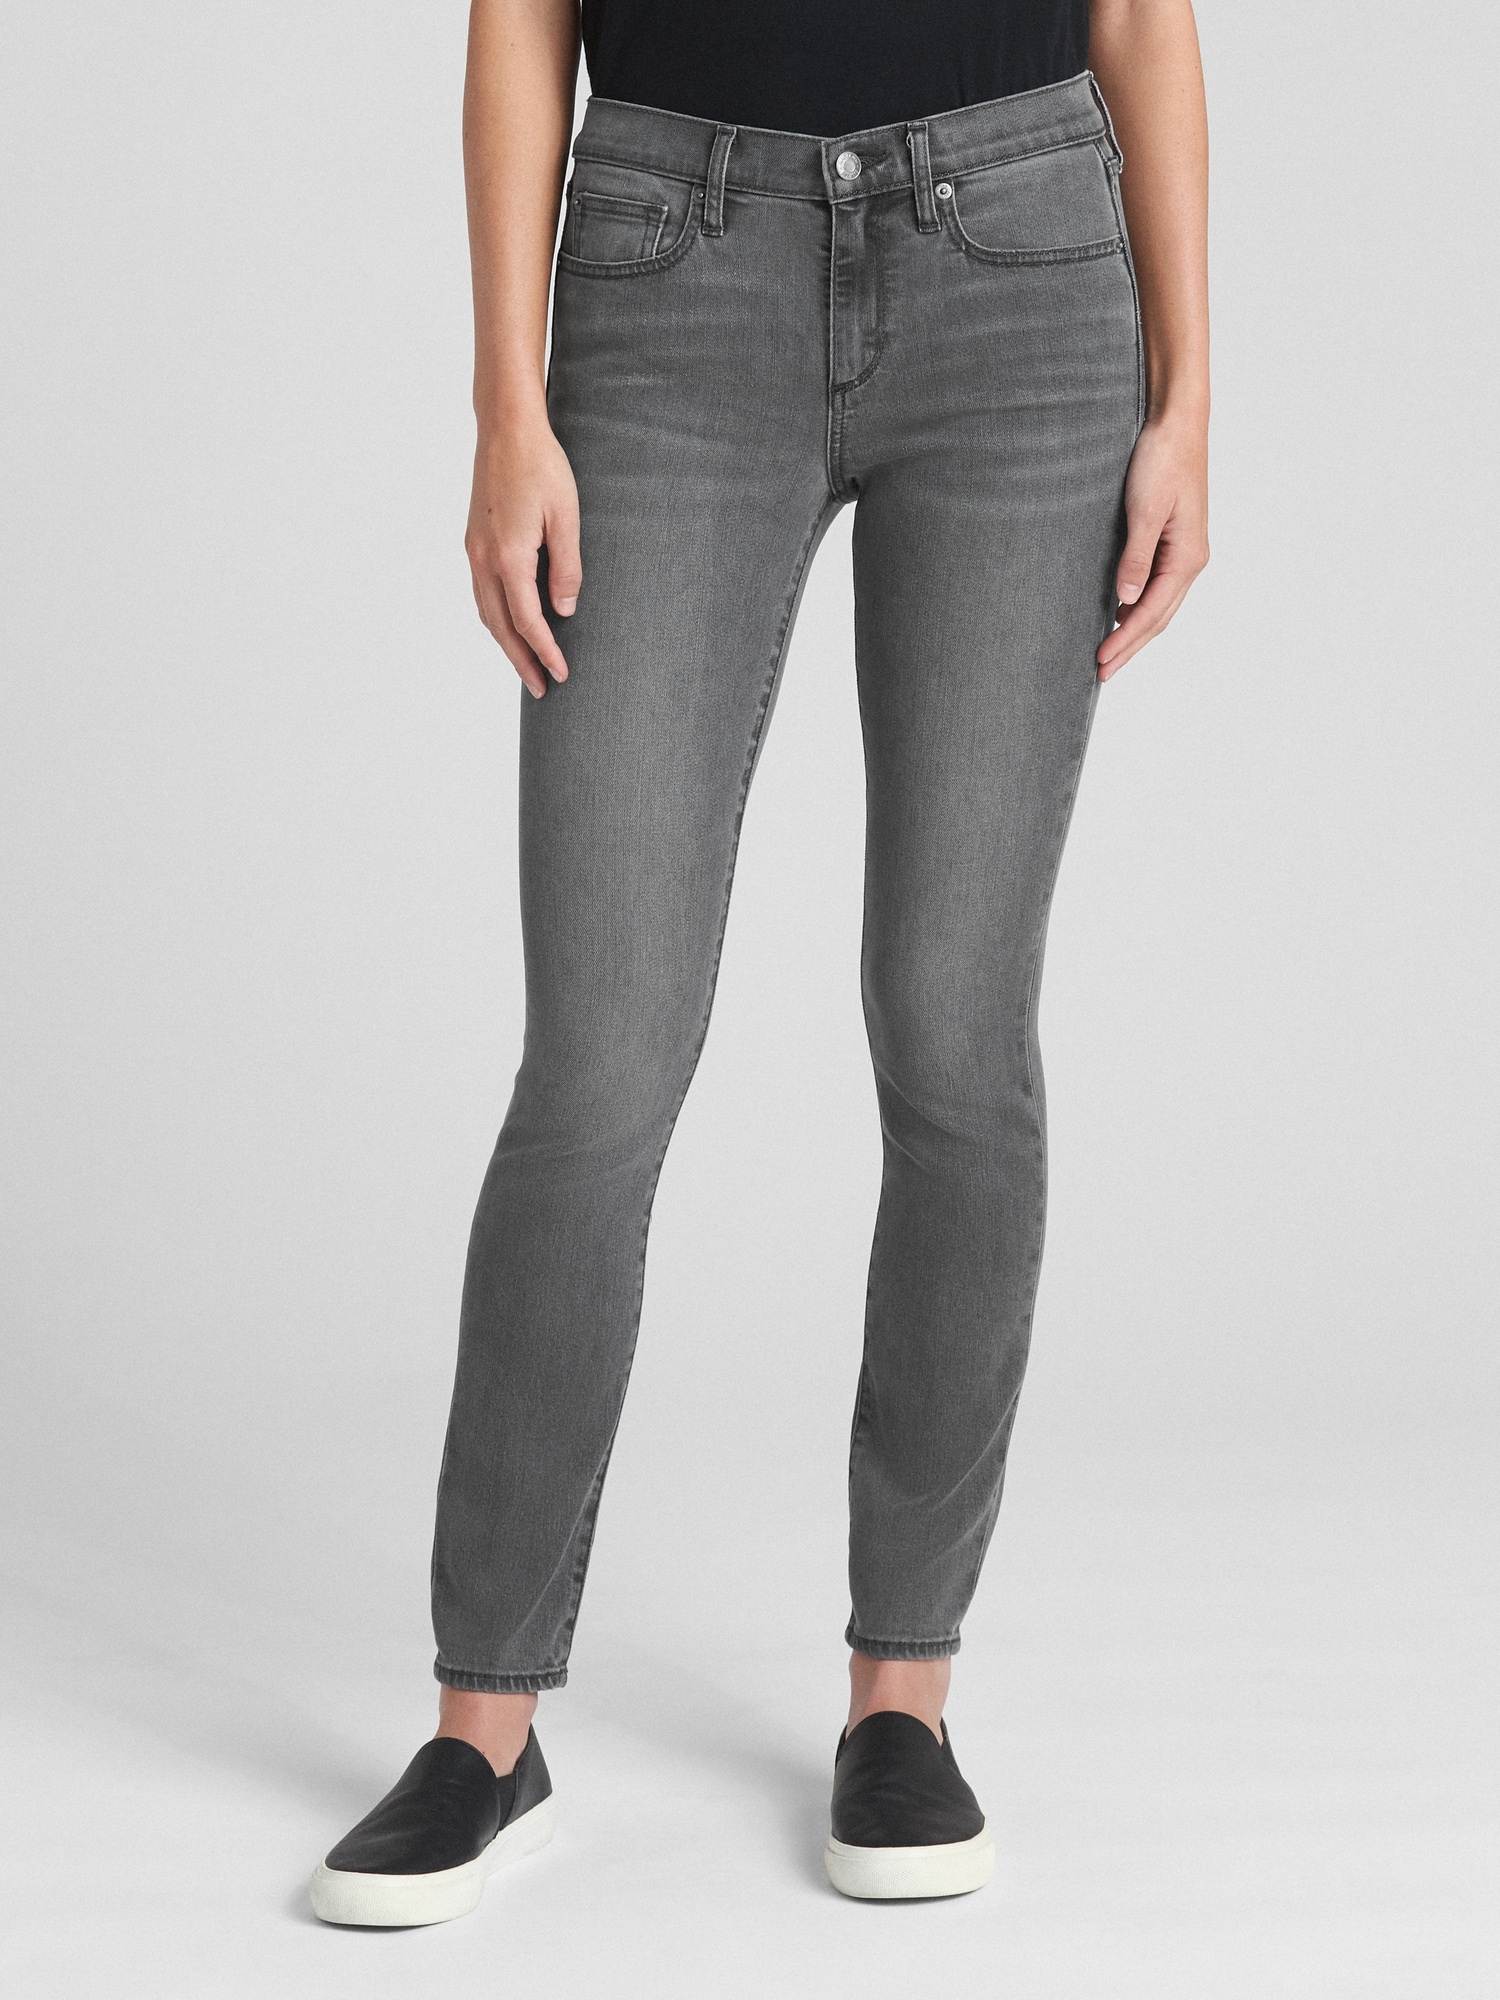 gap softwear jeans